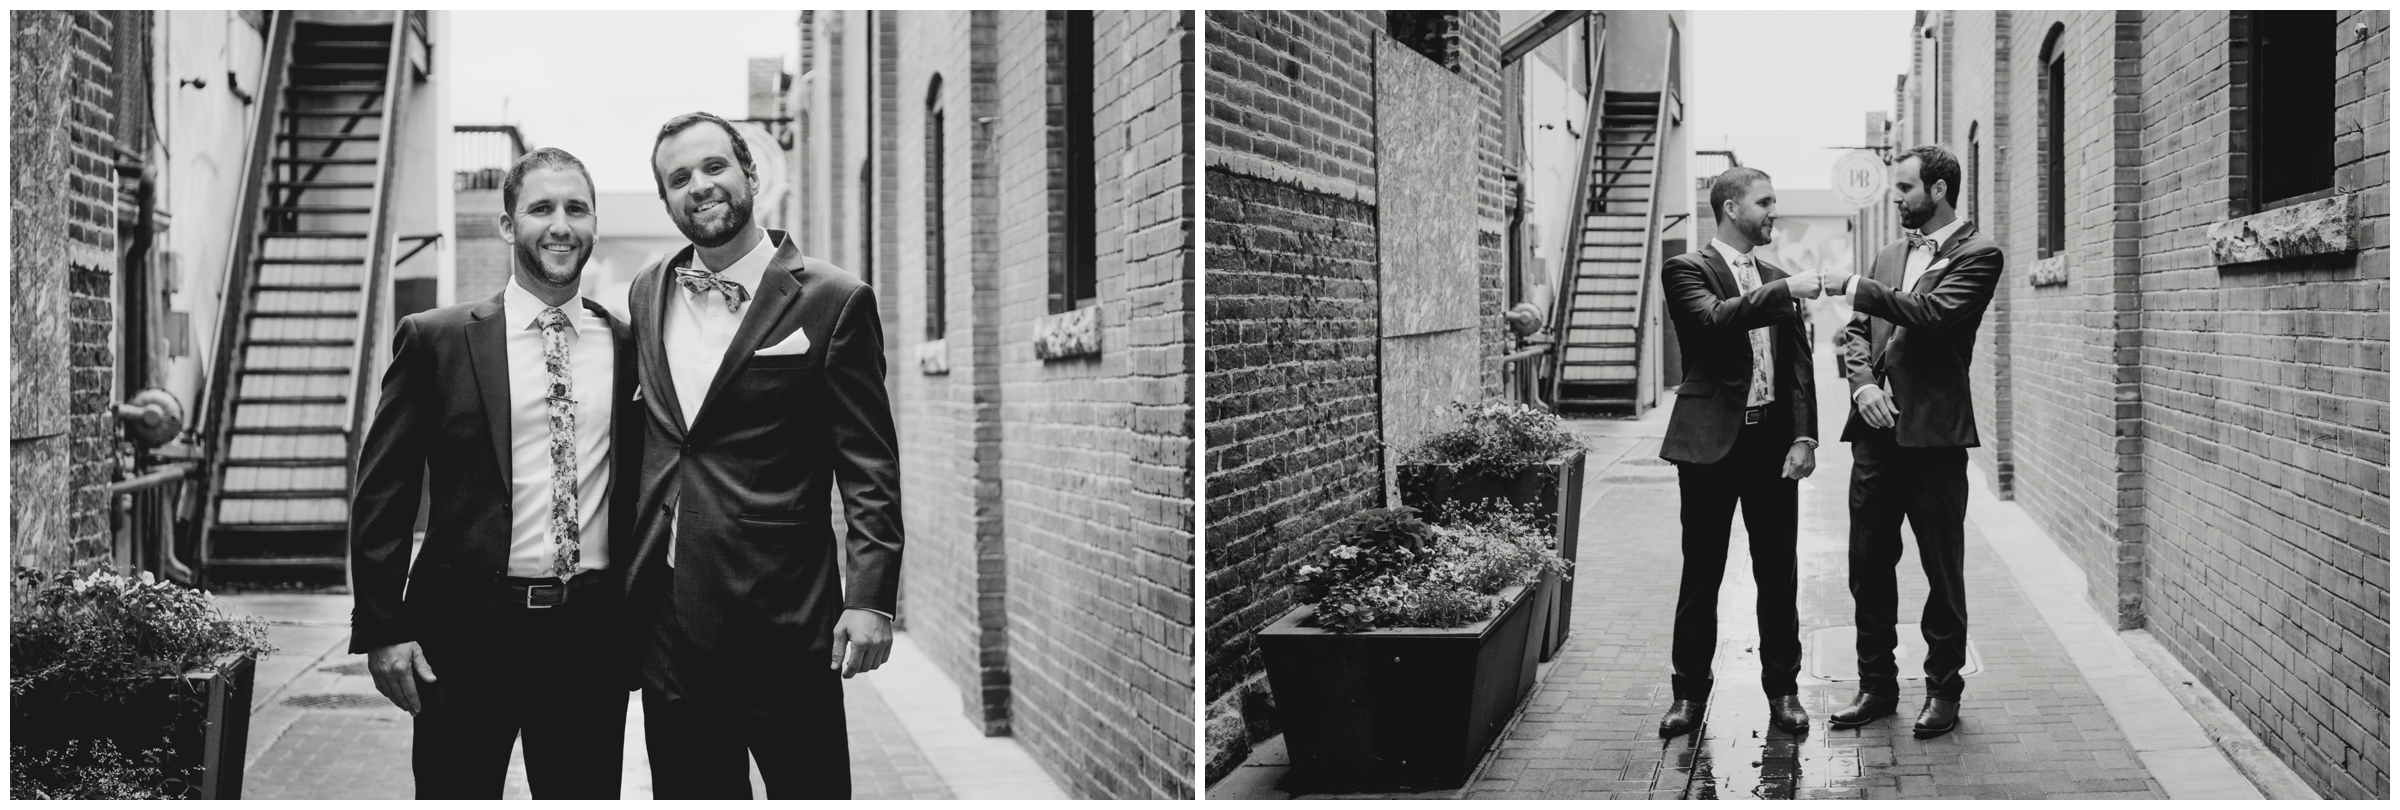 groom and best man posing in alleyway in Ft. Collins Colorado 